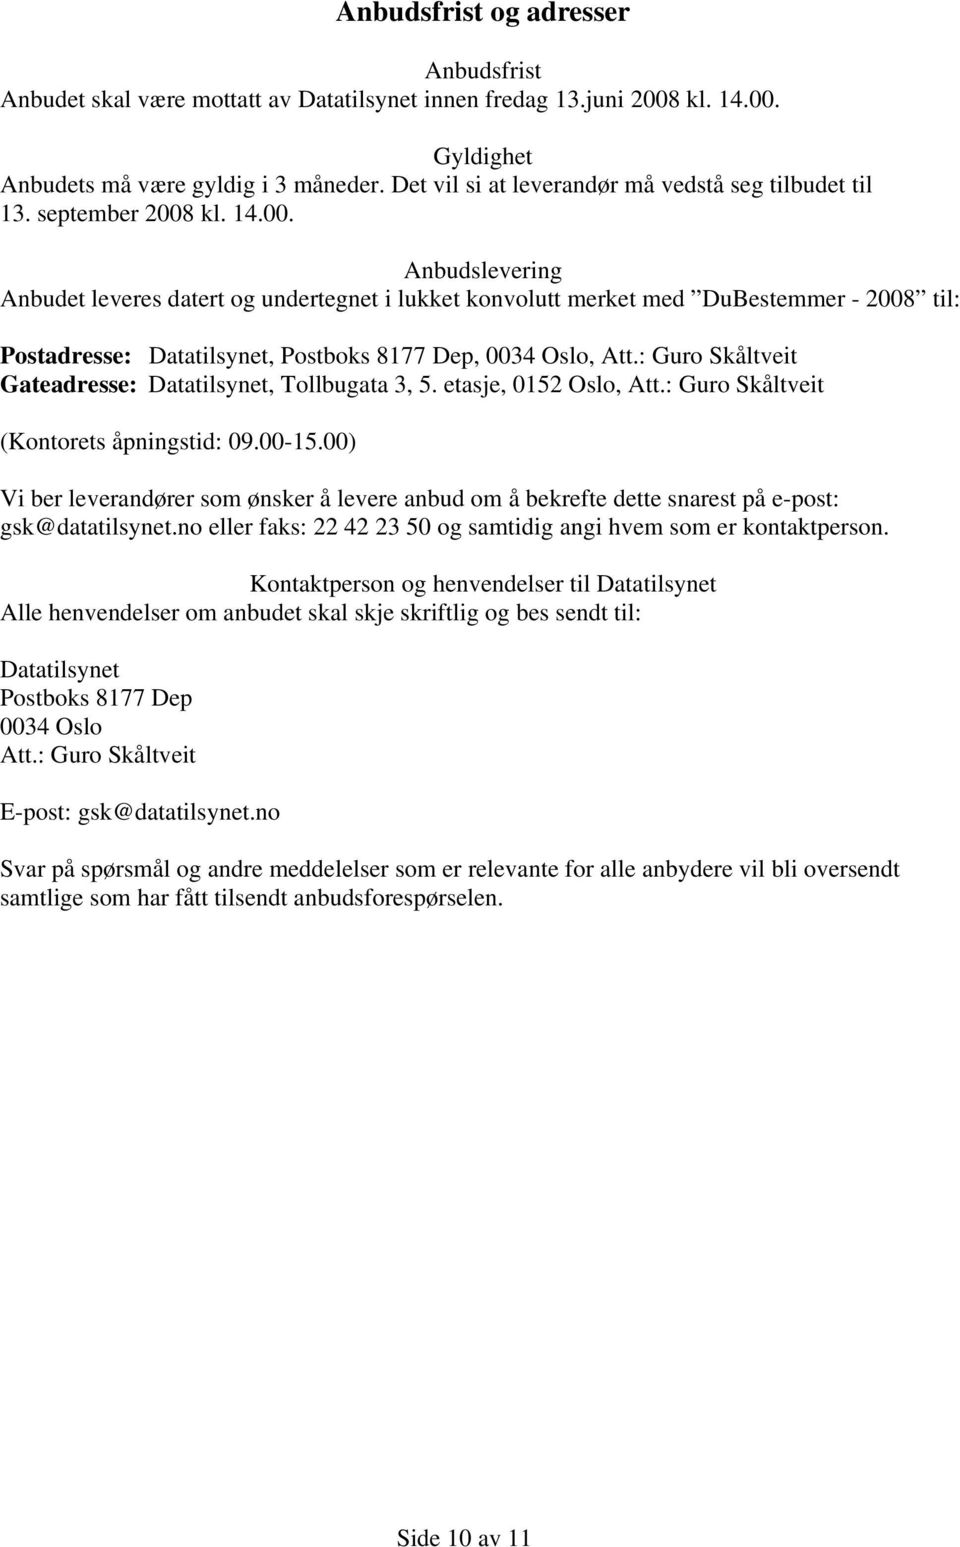 kl. 14.00. Anbudslevering Anbudet leveres datert og undertegnet i lukket konvolutt merket med DuBestemmer - 2008 til: Postadresse: Datatilsynet, Postboks 8177 Dep, 0034 Oslo, Att.